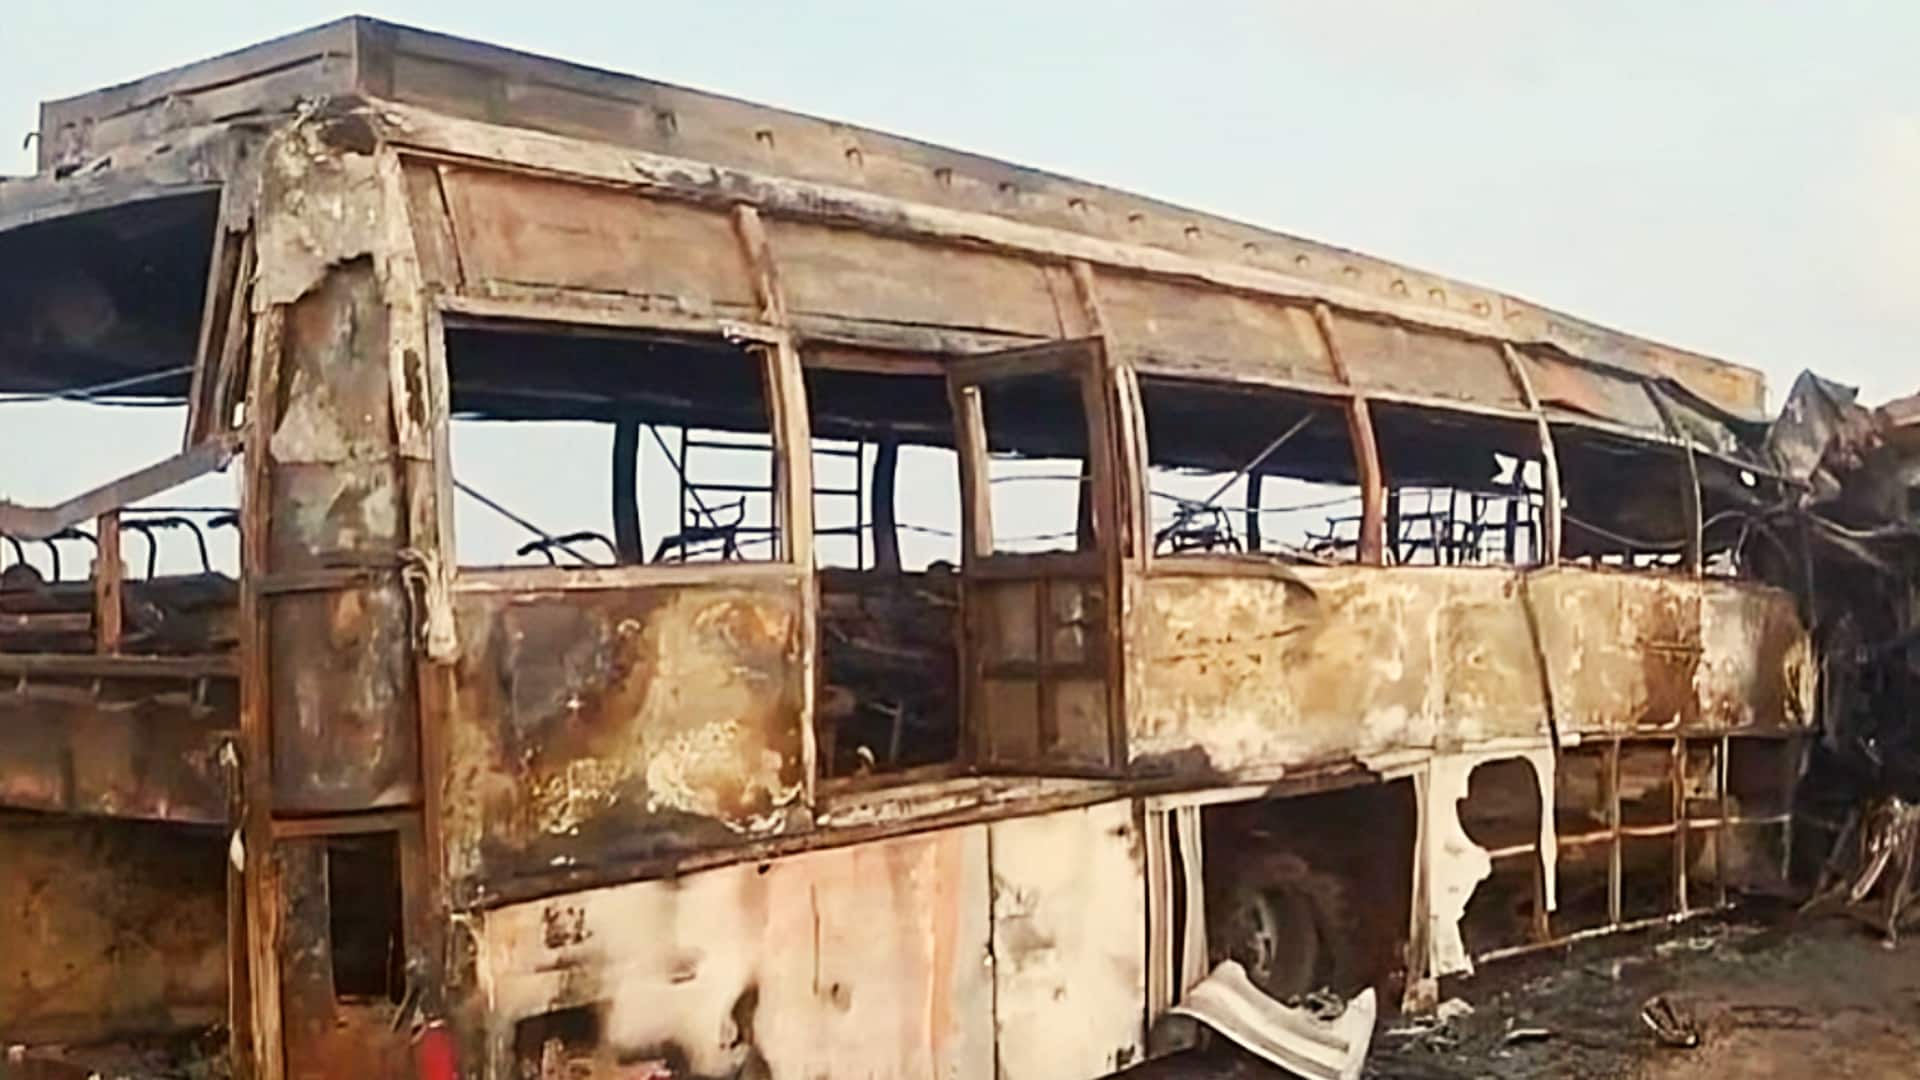  आंध्र प्रदेश: बस और ट्रक की आमने-सामने टक्कर के बाद लगी भीषण आग, 6 की मौत